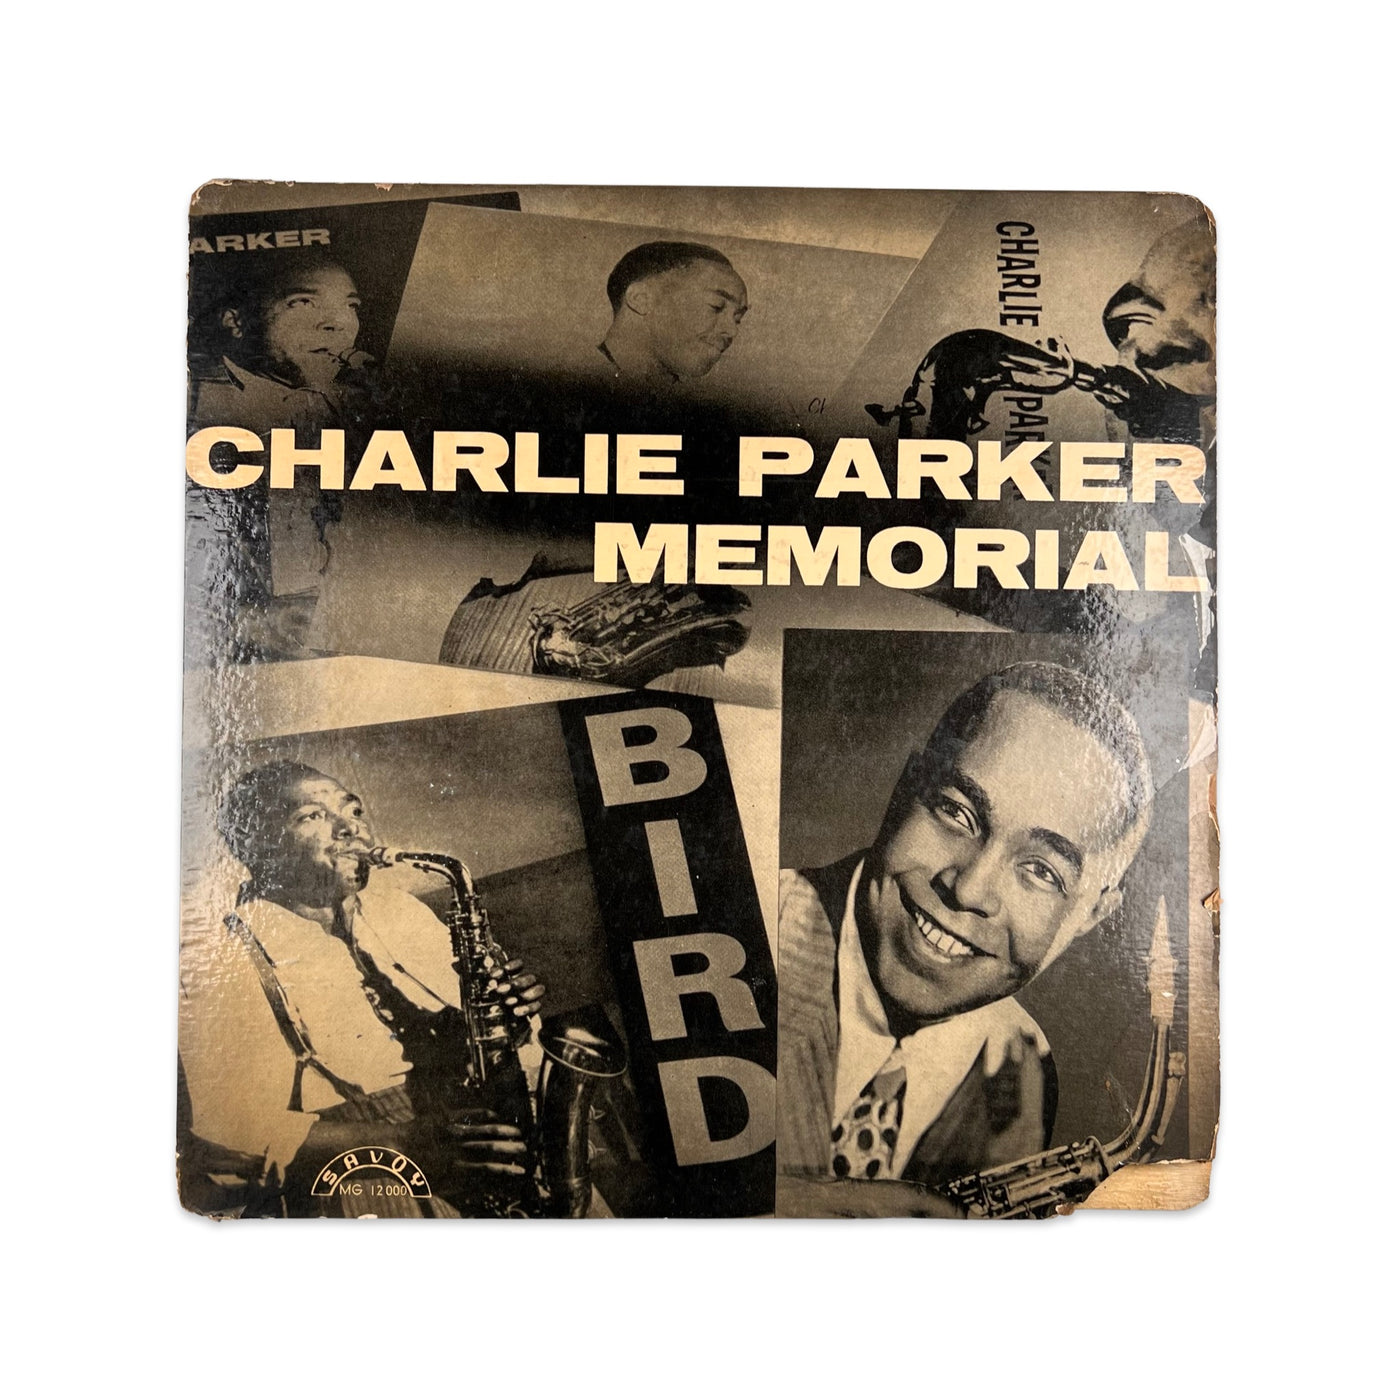 Charlie Parker – Charlie Parker Memorial